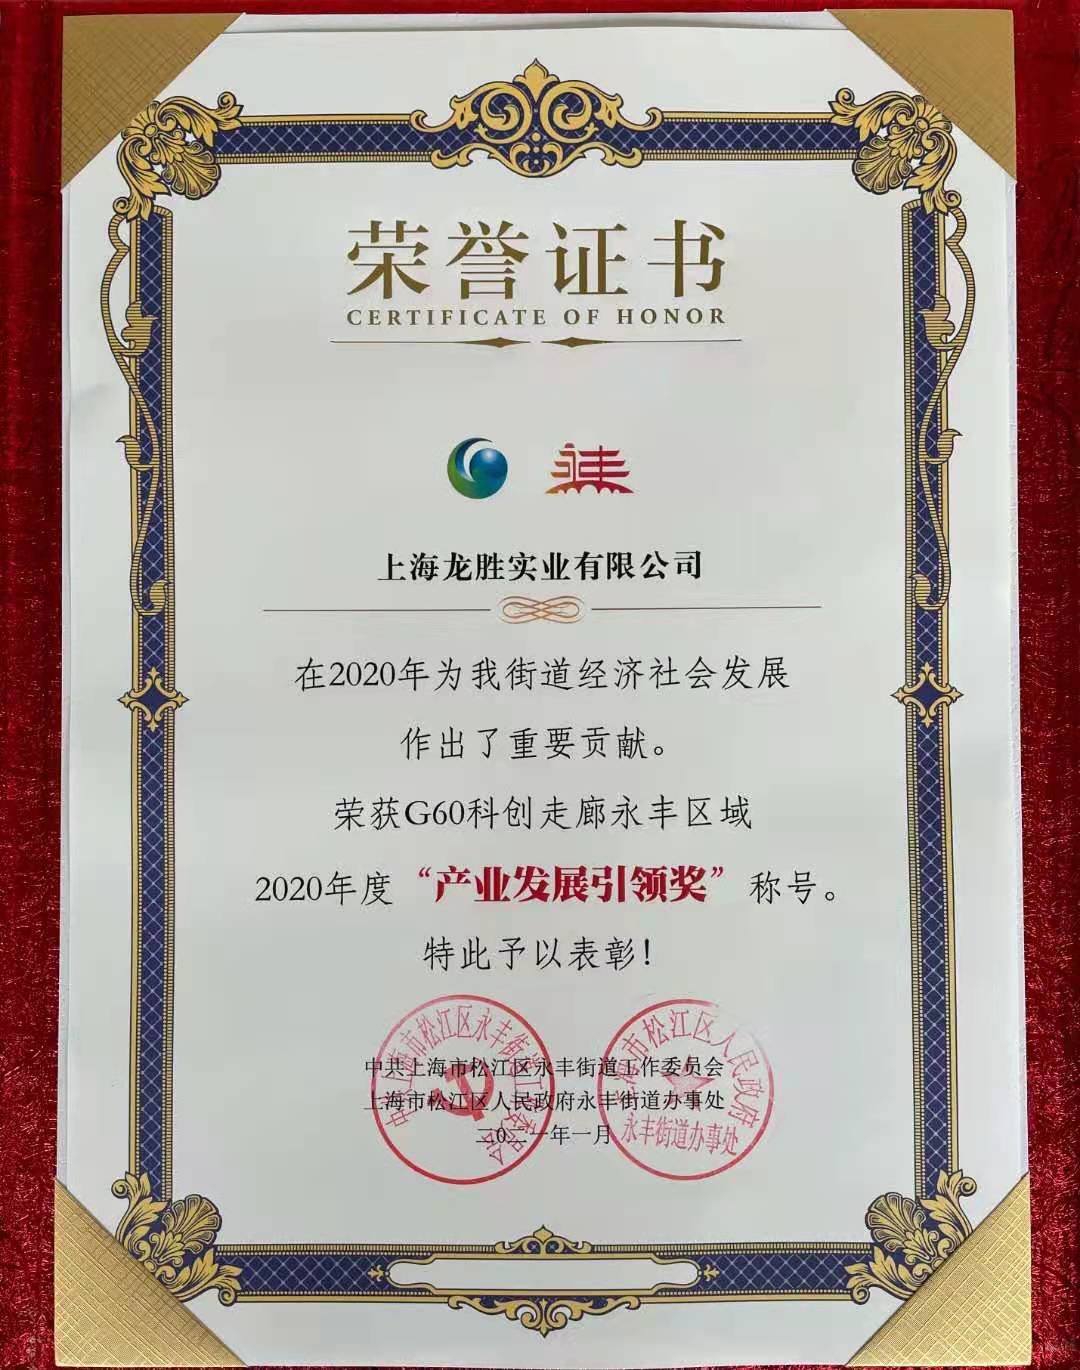 G60科创走廊永丰区域2020年度产业发展引领奖